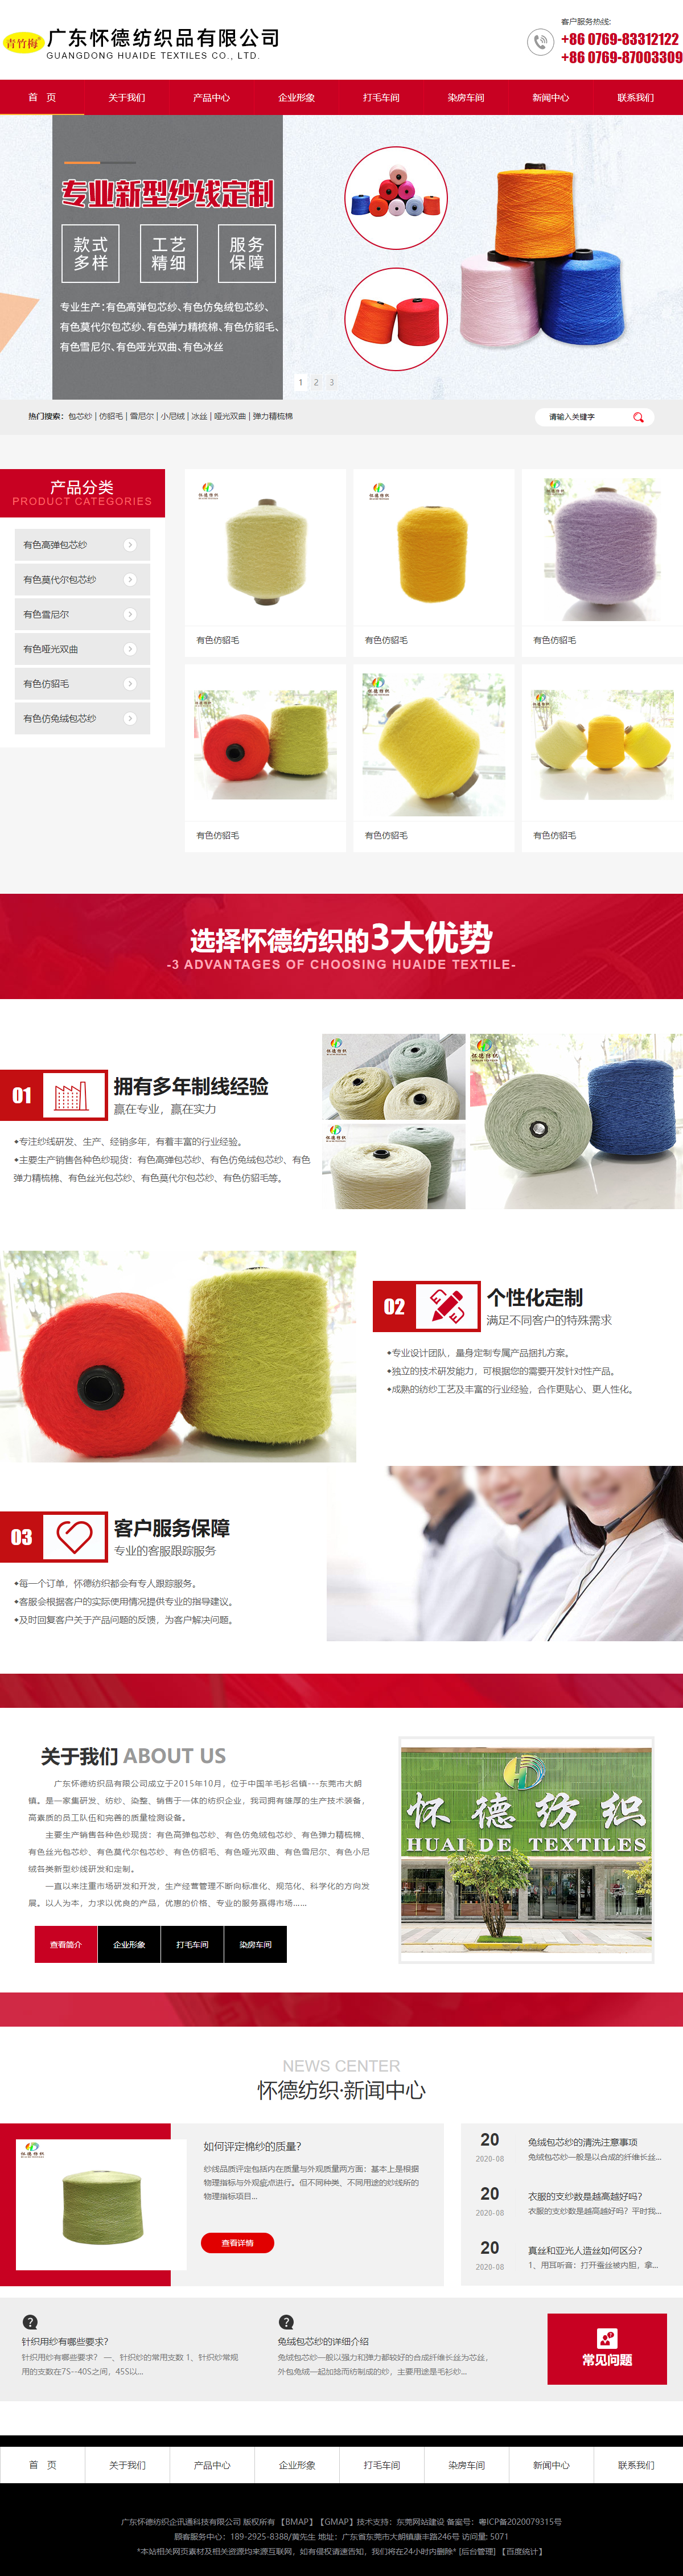 广东怀德纺织品有限公司网站案例